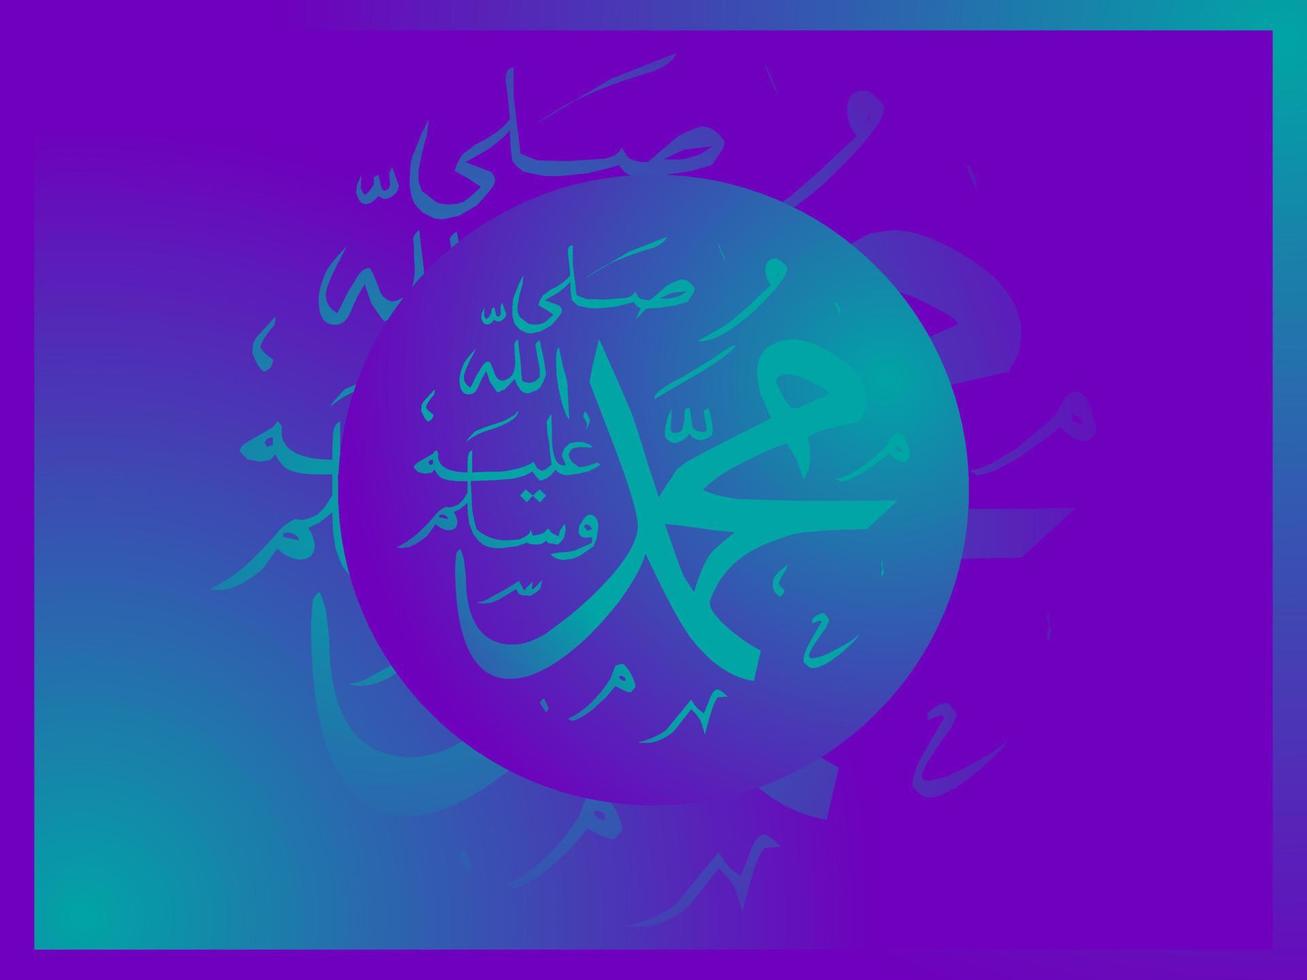 la calligraphie arabe et islamique du prophète muhammad la paix soit sur lui l'art islamique traditionnel et moderne peut être utilisé pour de nombreux sujets comme le mawlid, el nabawi. traduction le prophète muhammad vecteur